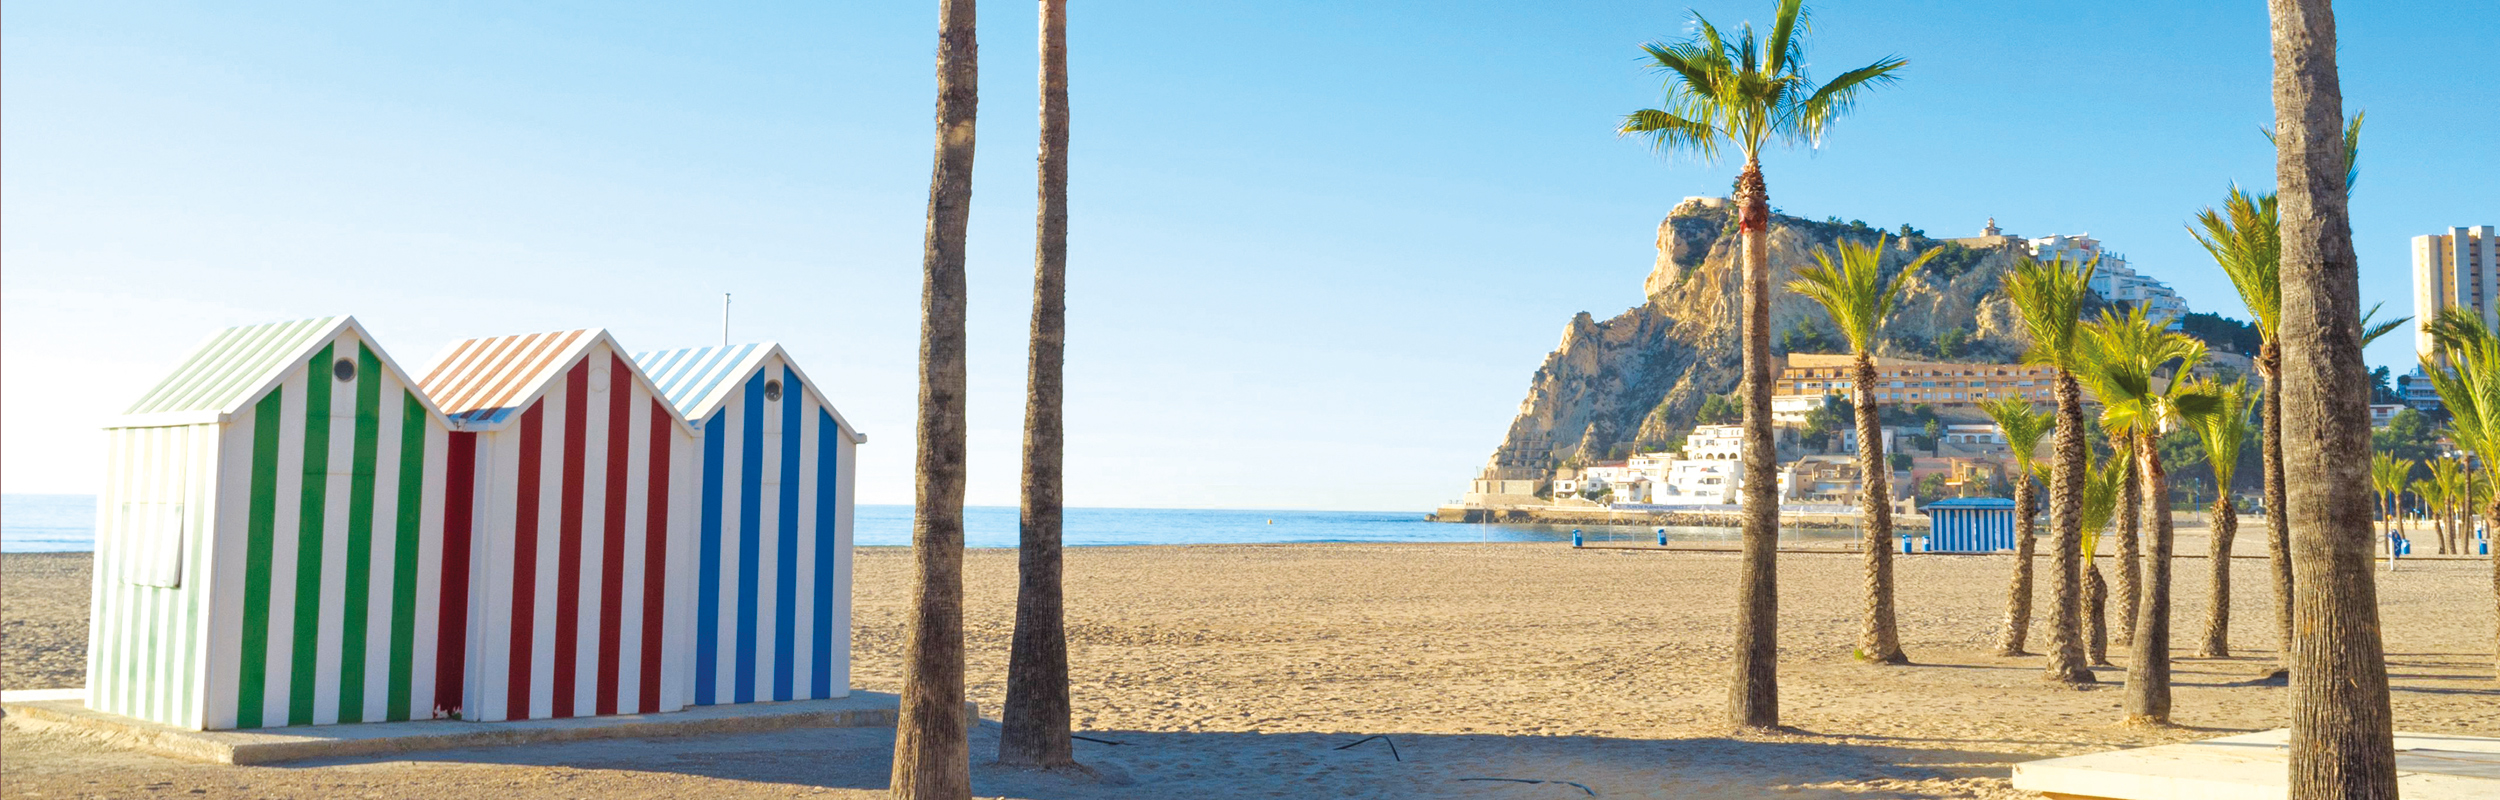 Réserver vos prochaines vacances à Alicante avec Liege Airport